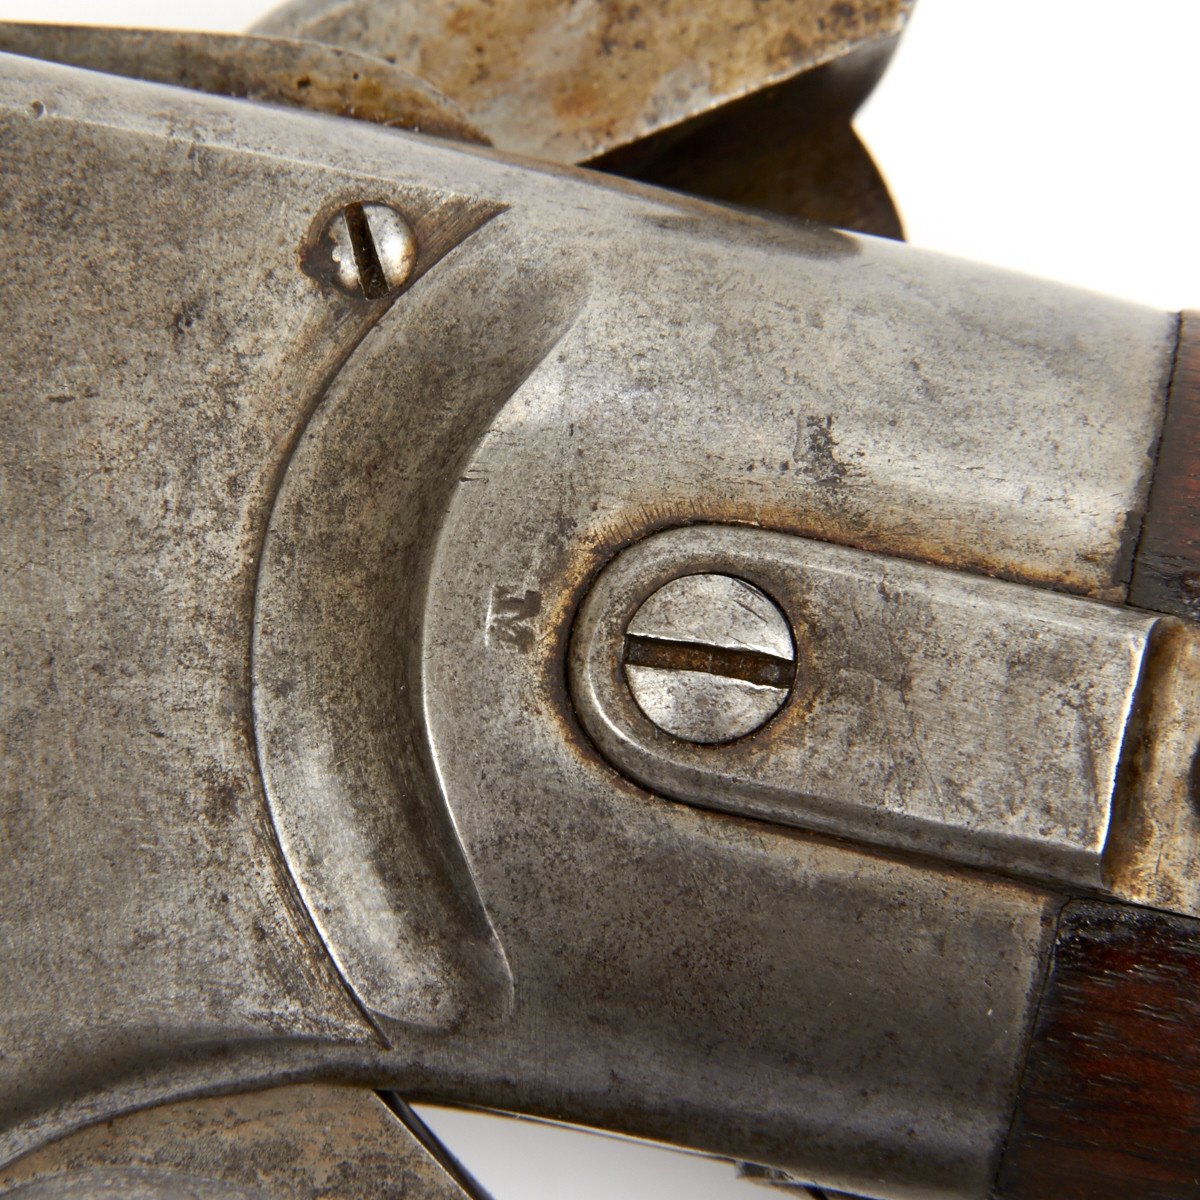 civil war carbine serial numbers